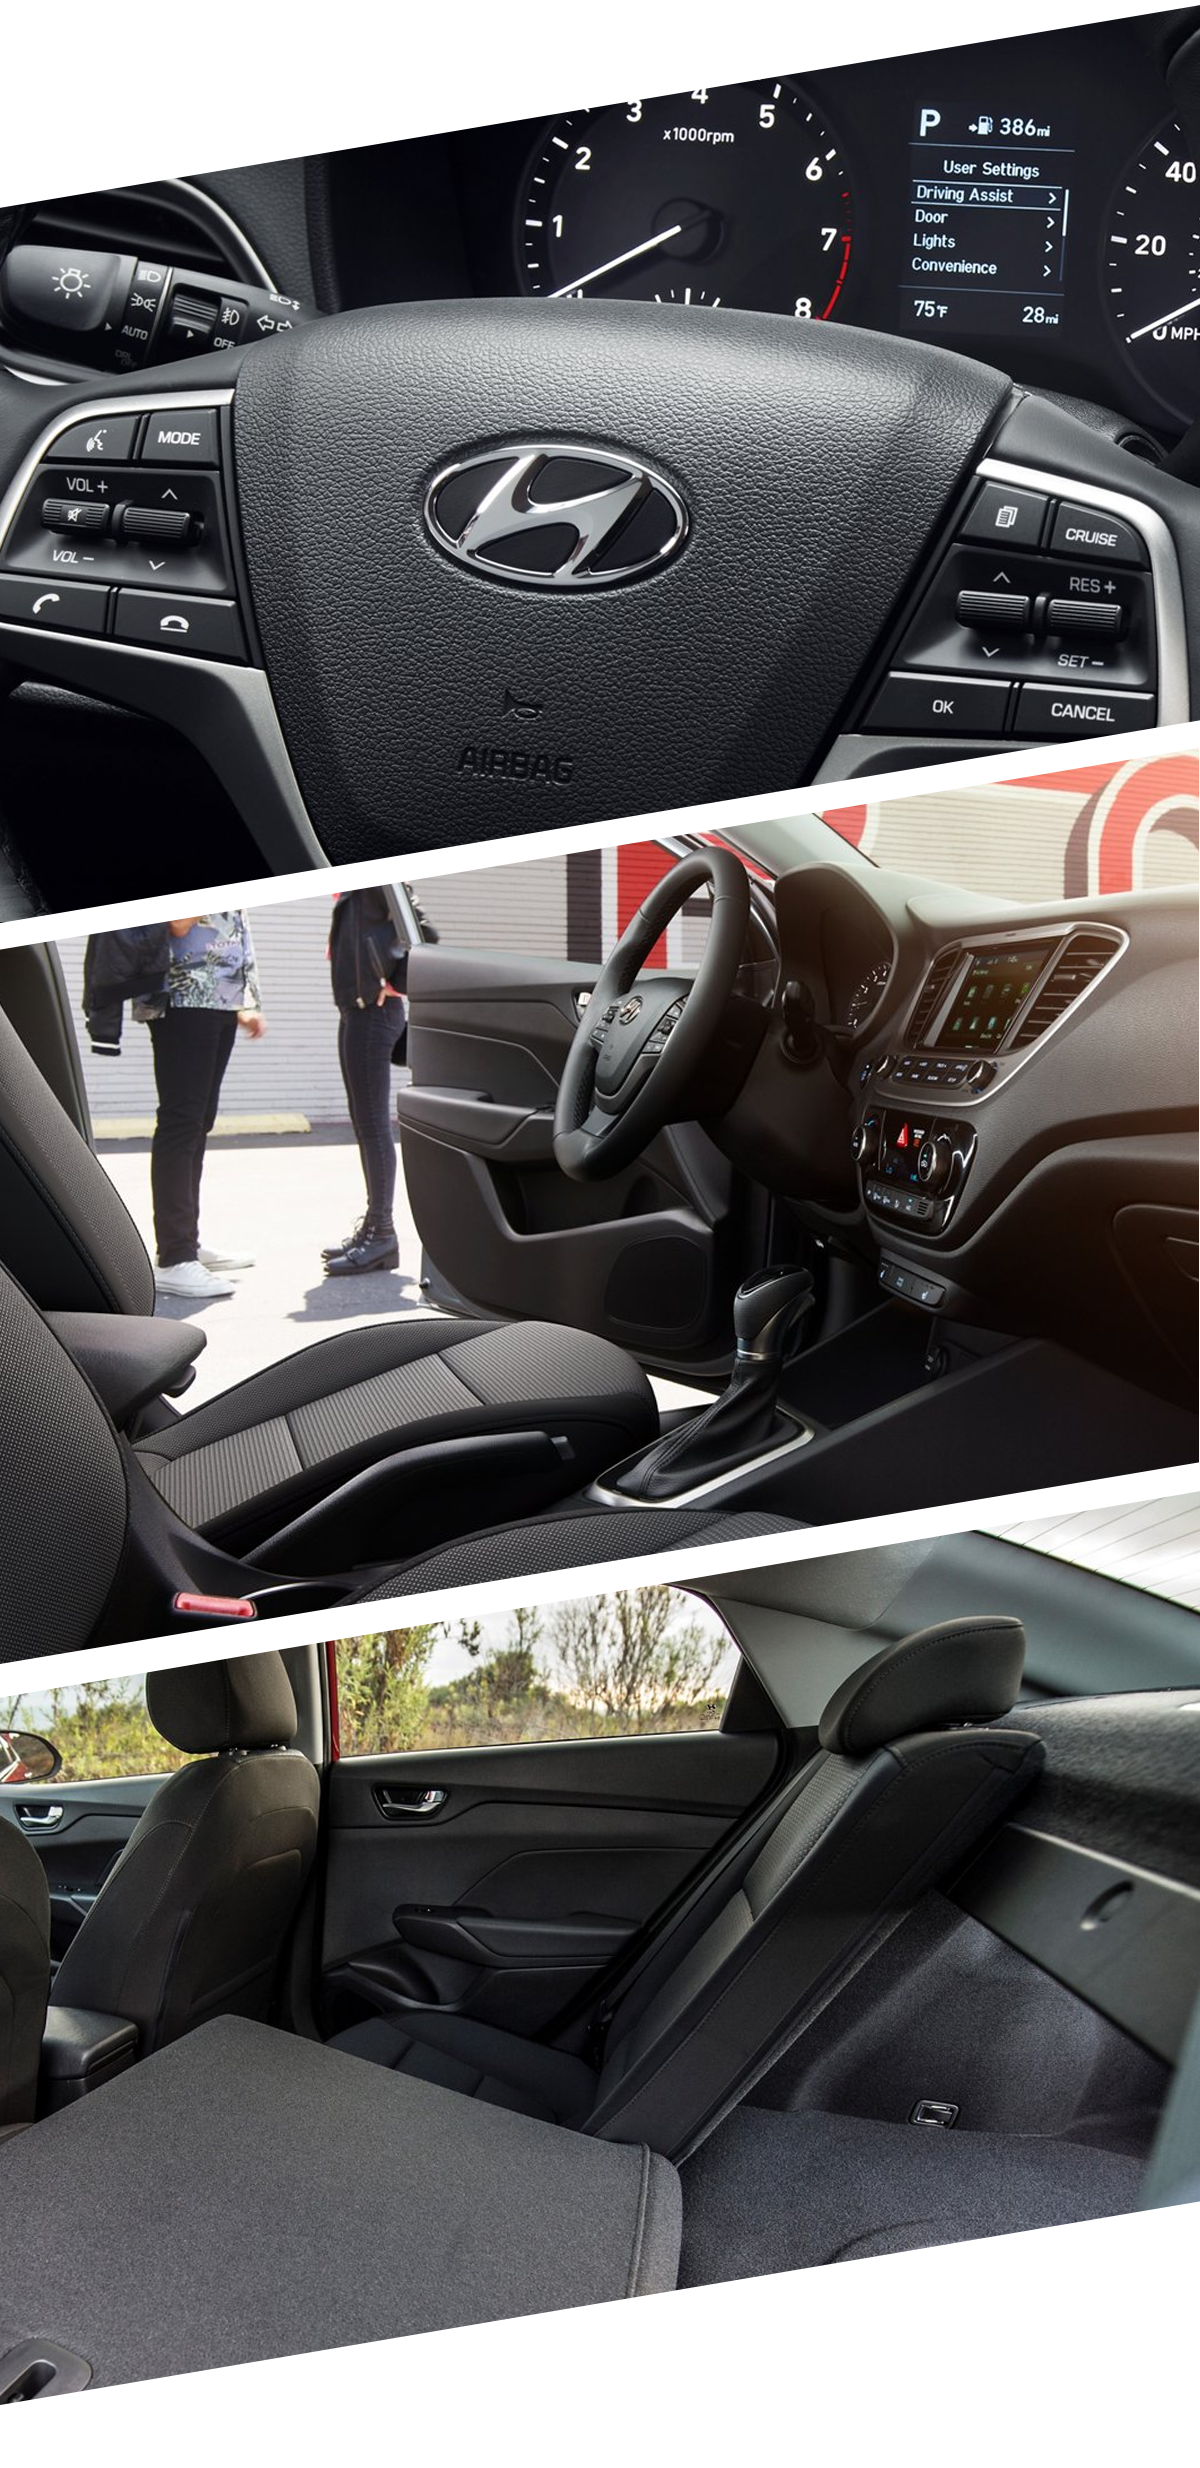 2021 Hyundai Accent Interior Images